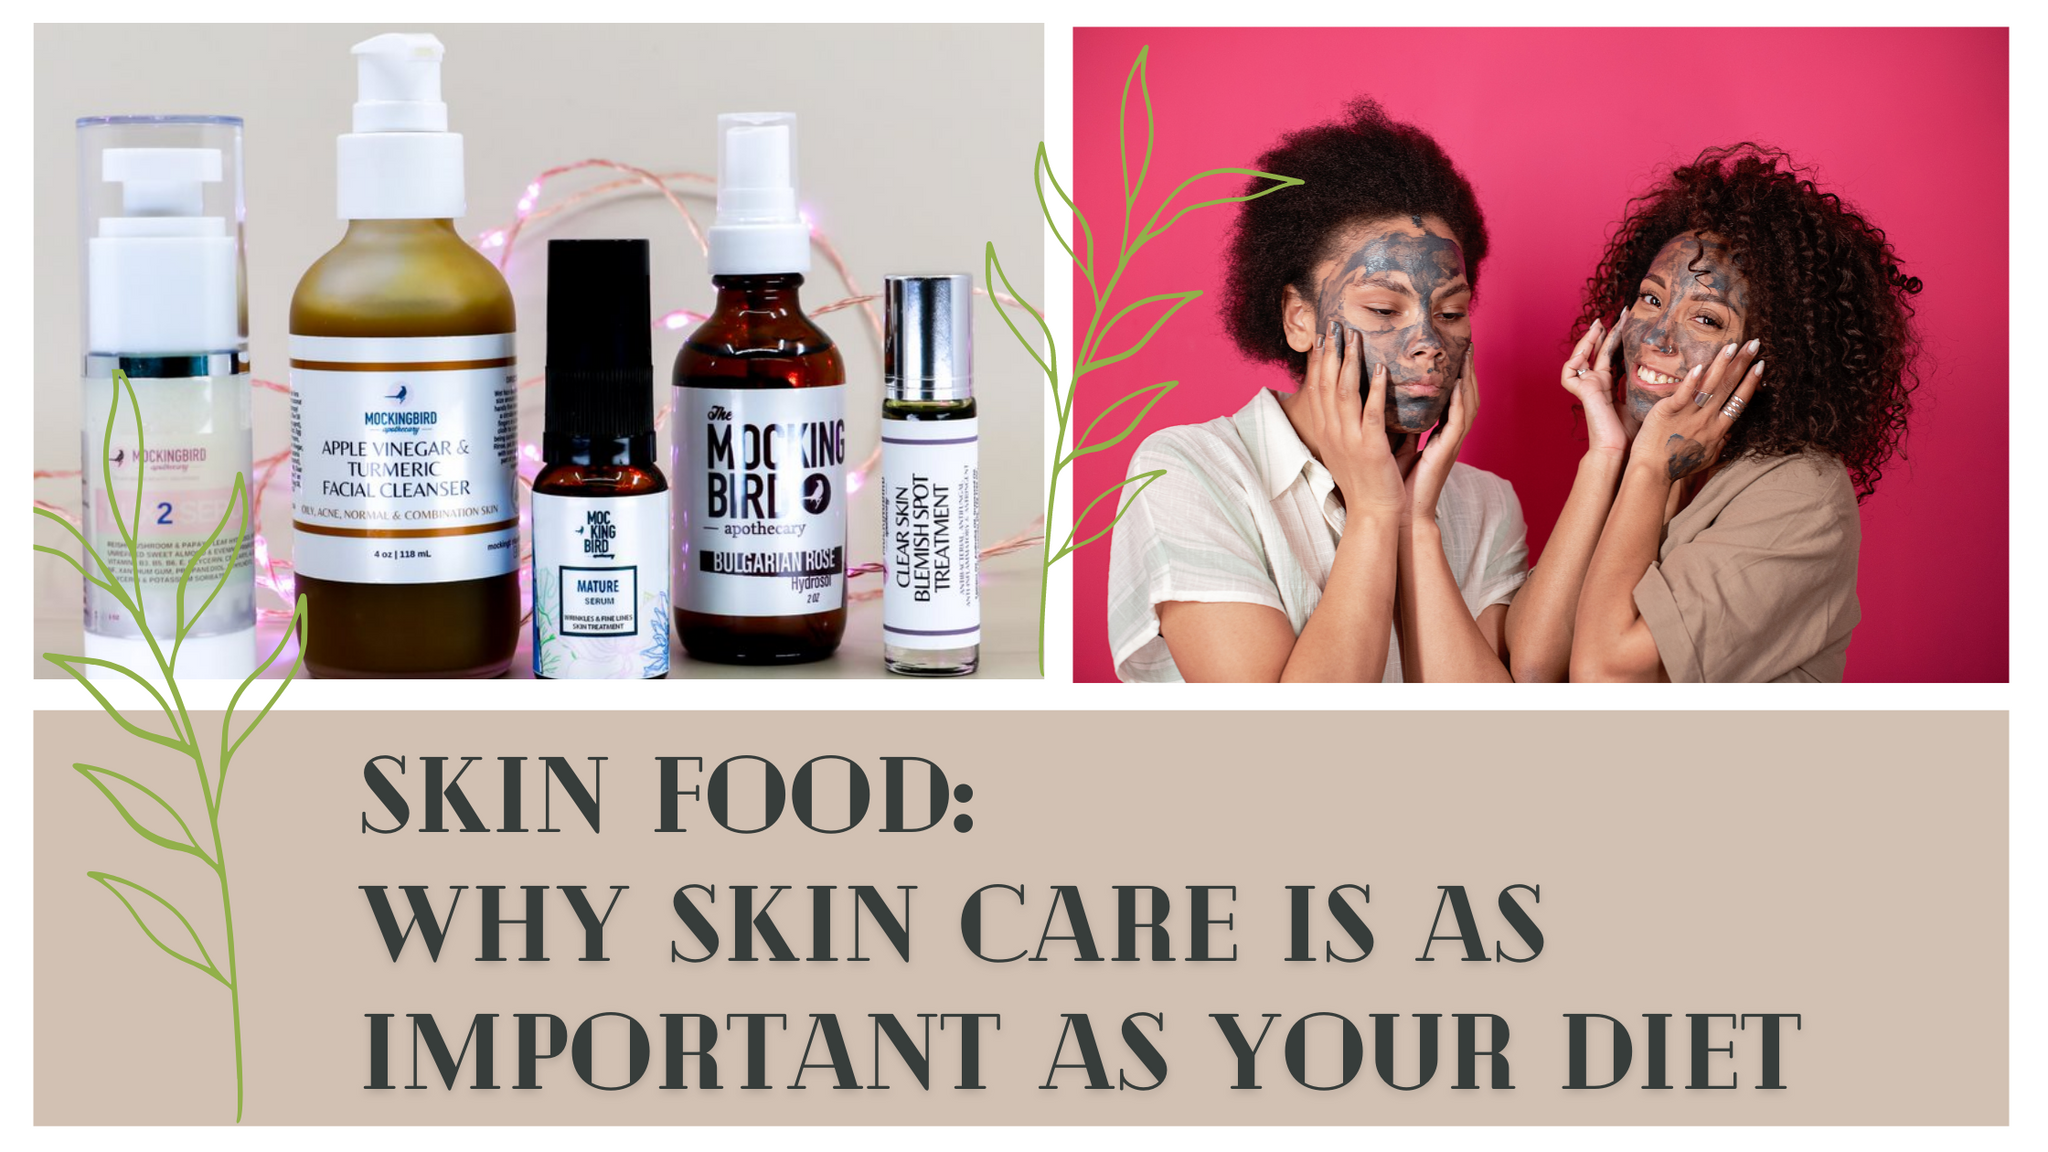 Publicación del blog sobre alimentos para la piel por qué el cuidado de la piel es tan importante como la dieta